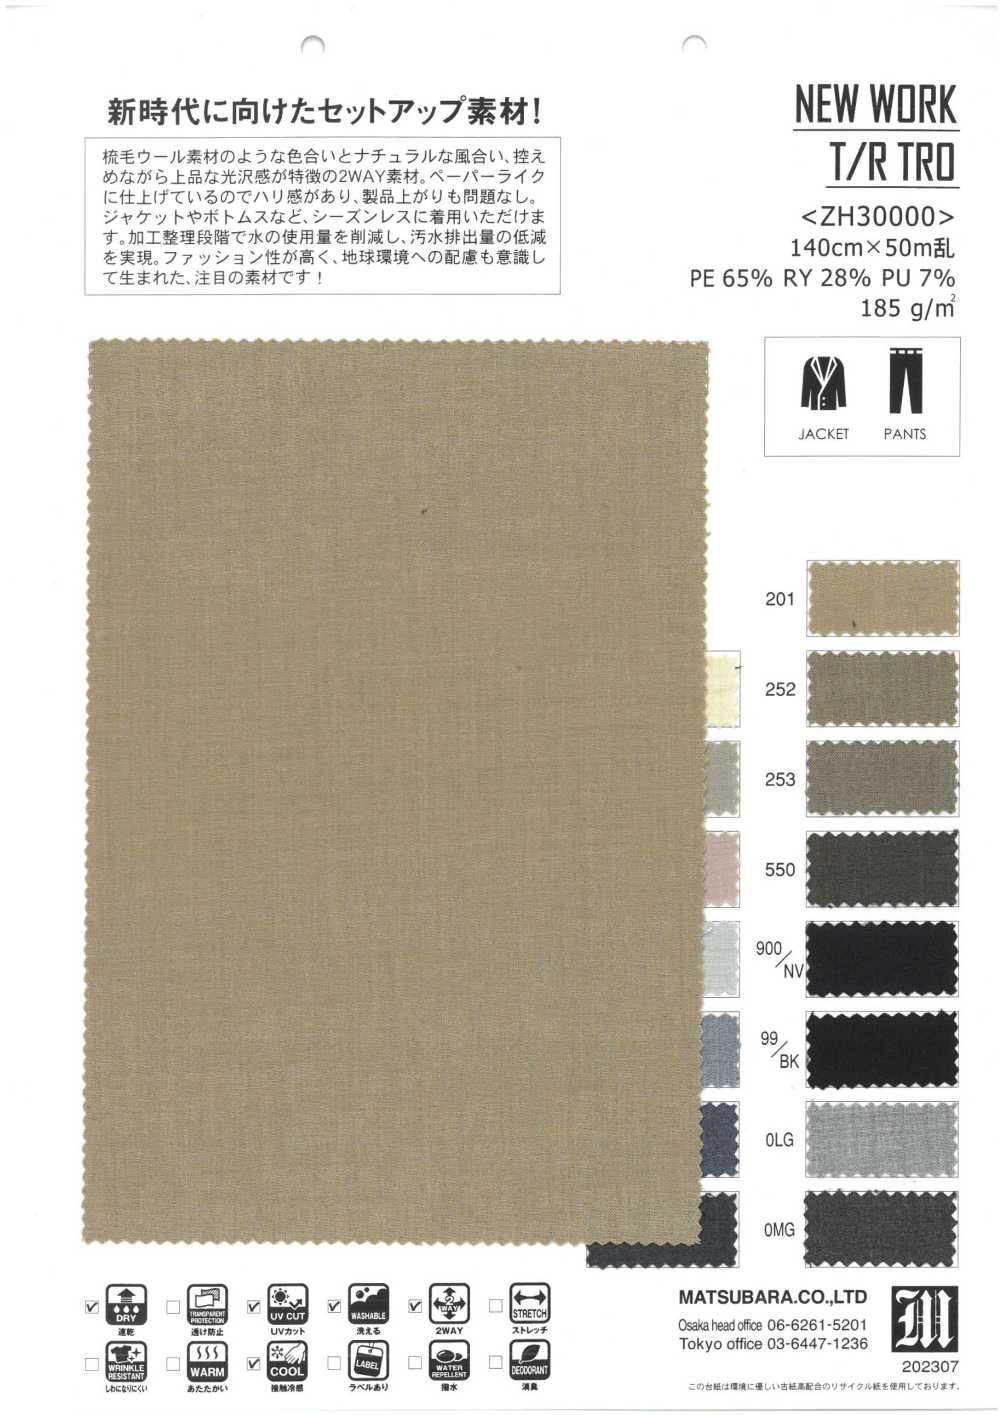 ZH30000 NOUVEAU TRAVAIL T/R TRO[Fabrication De Textile] Matsubara